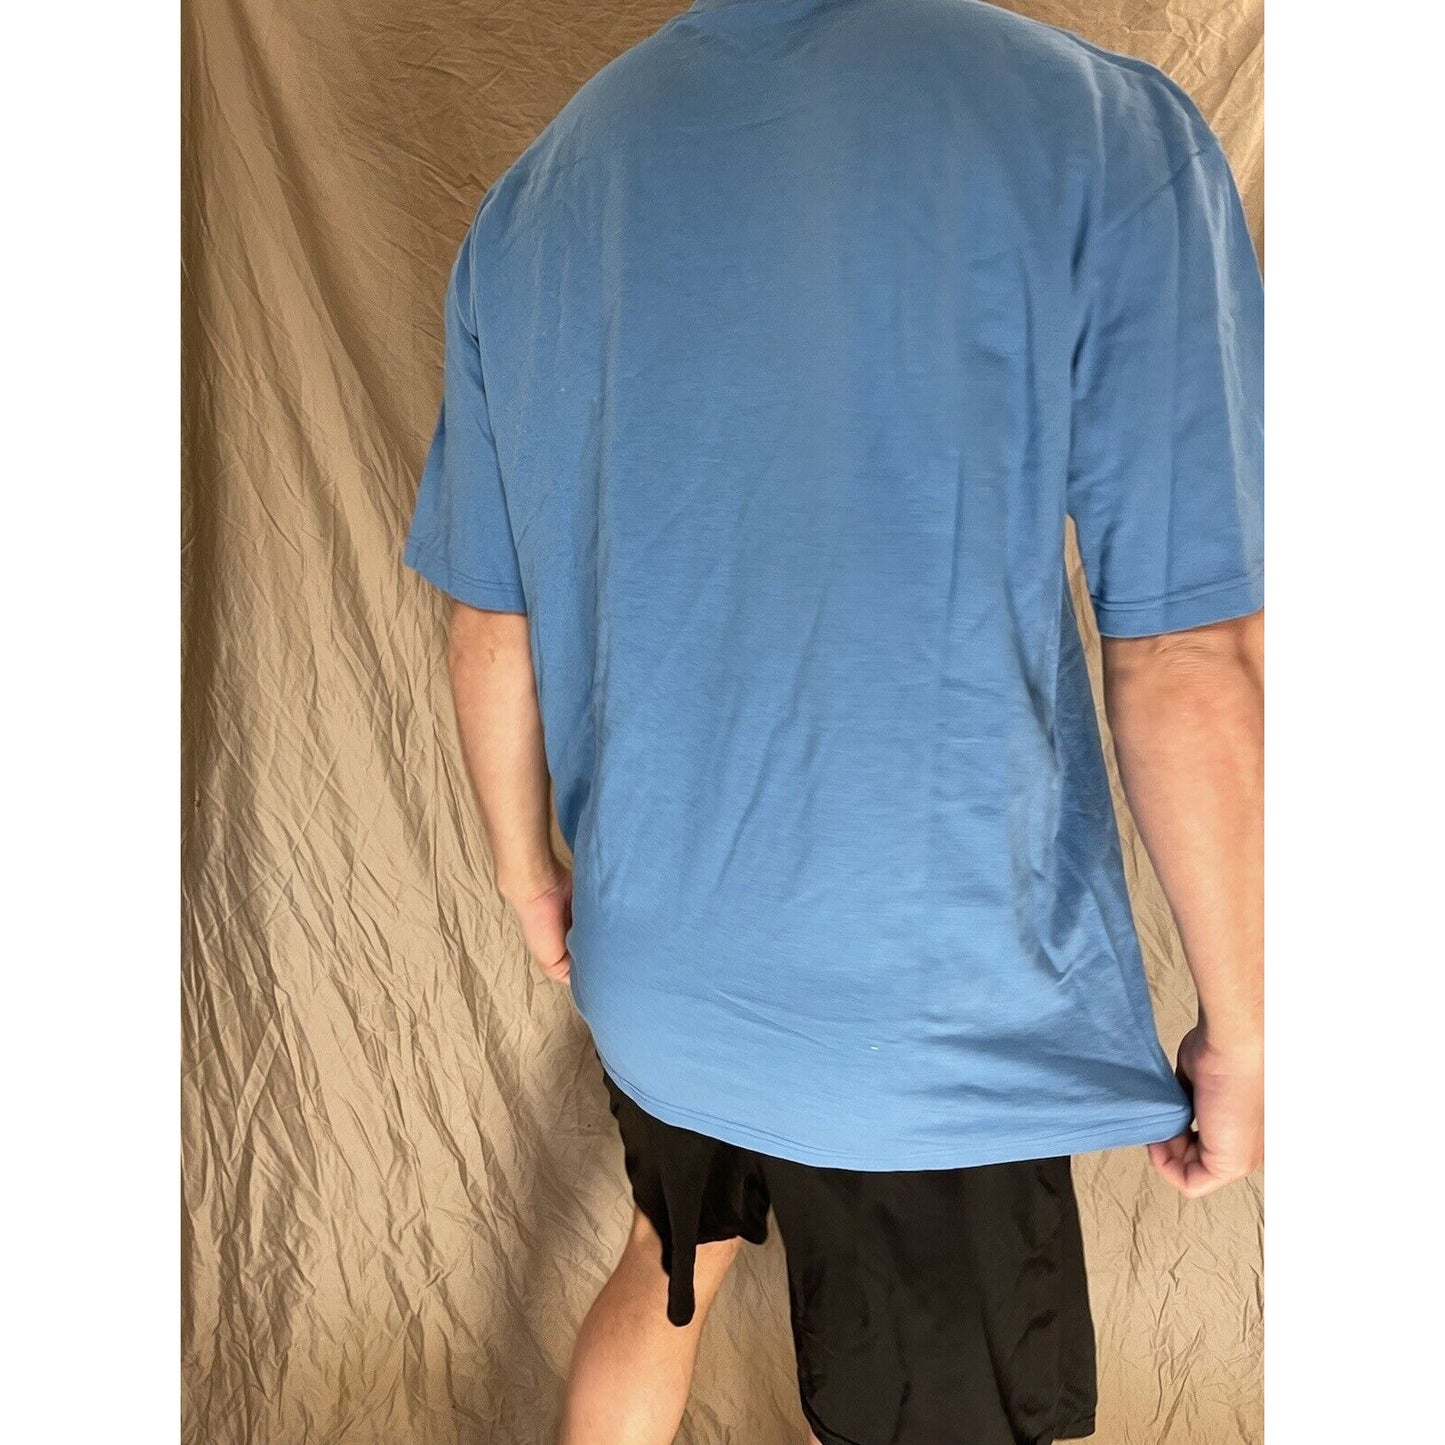 men's soffe blue XL maxwell air force base t-shirt